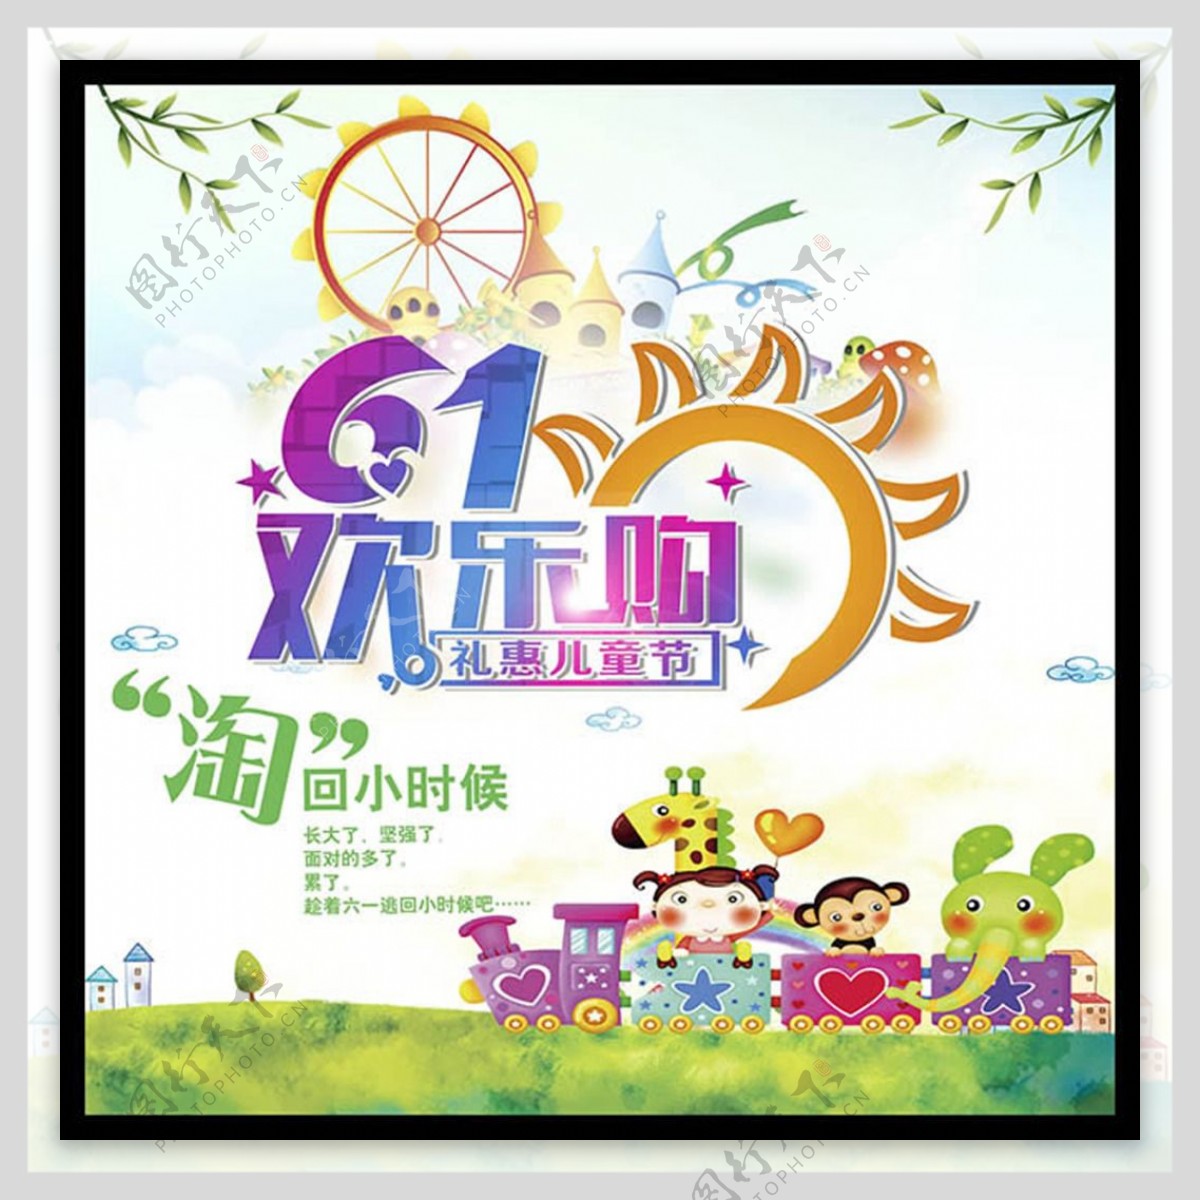 61欢乐购礼惠儿童节促销海报psd素材